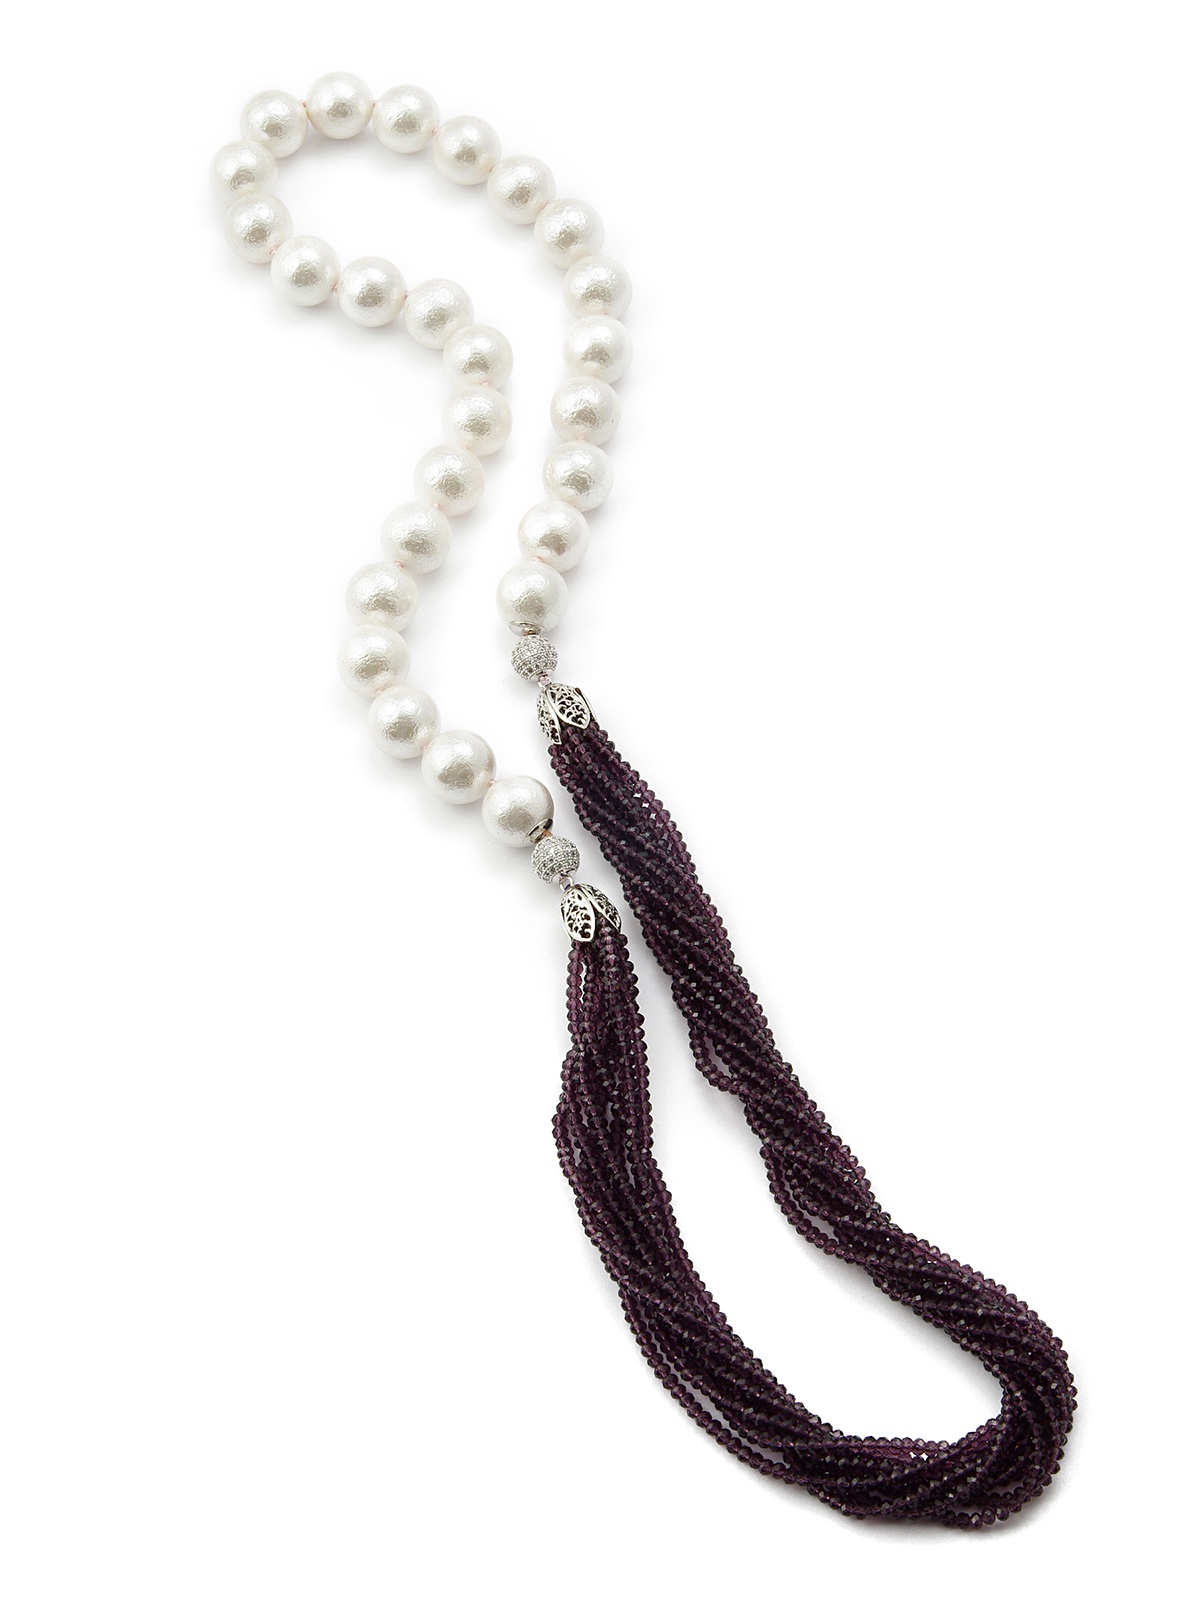 фото Колье/ожерелье бижутерное ЖемАрт с541-062, Искусственный жемчуг, Кварц, Бижутерный сплав, 85 см, белый, фиолетовый, серебристый